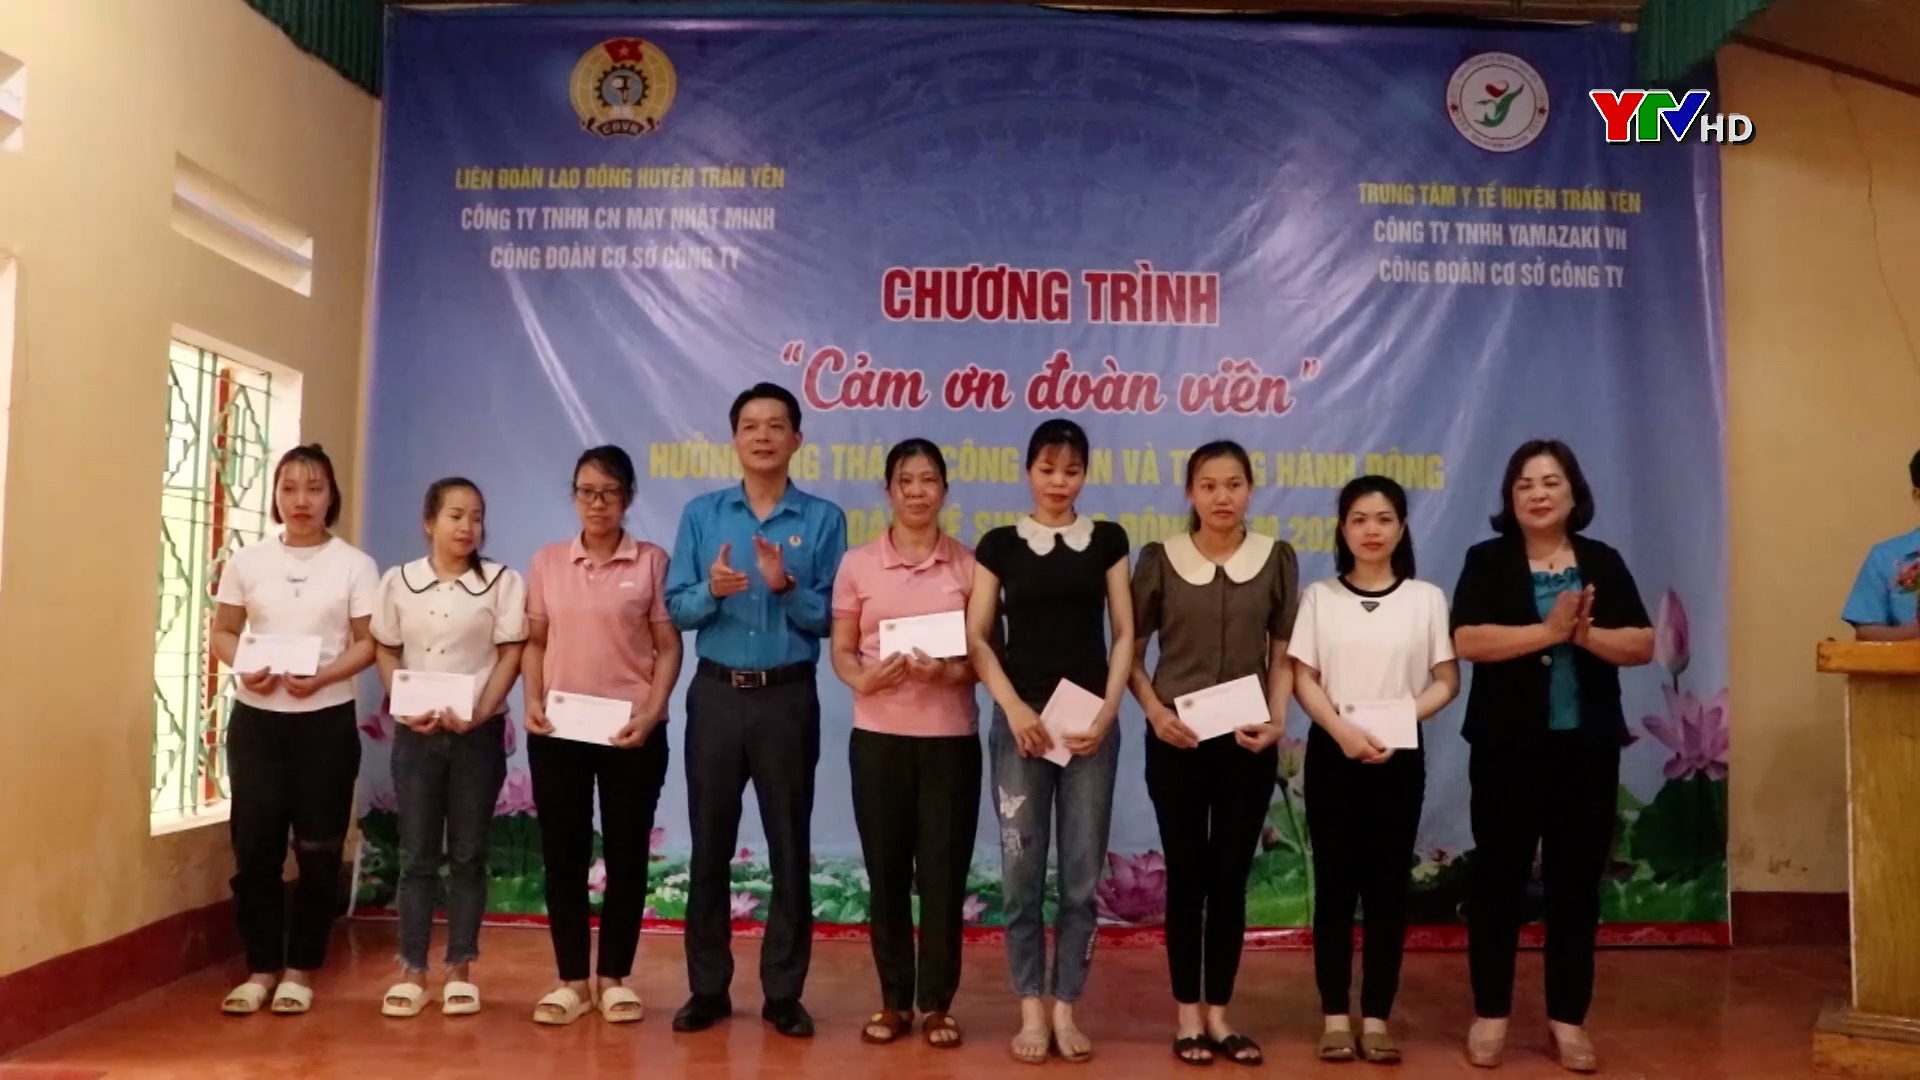 LĐLĐ huyện Trấn Yên tổ chức chương trình “Cảm ơn đoàn viên”